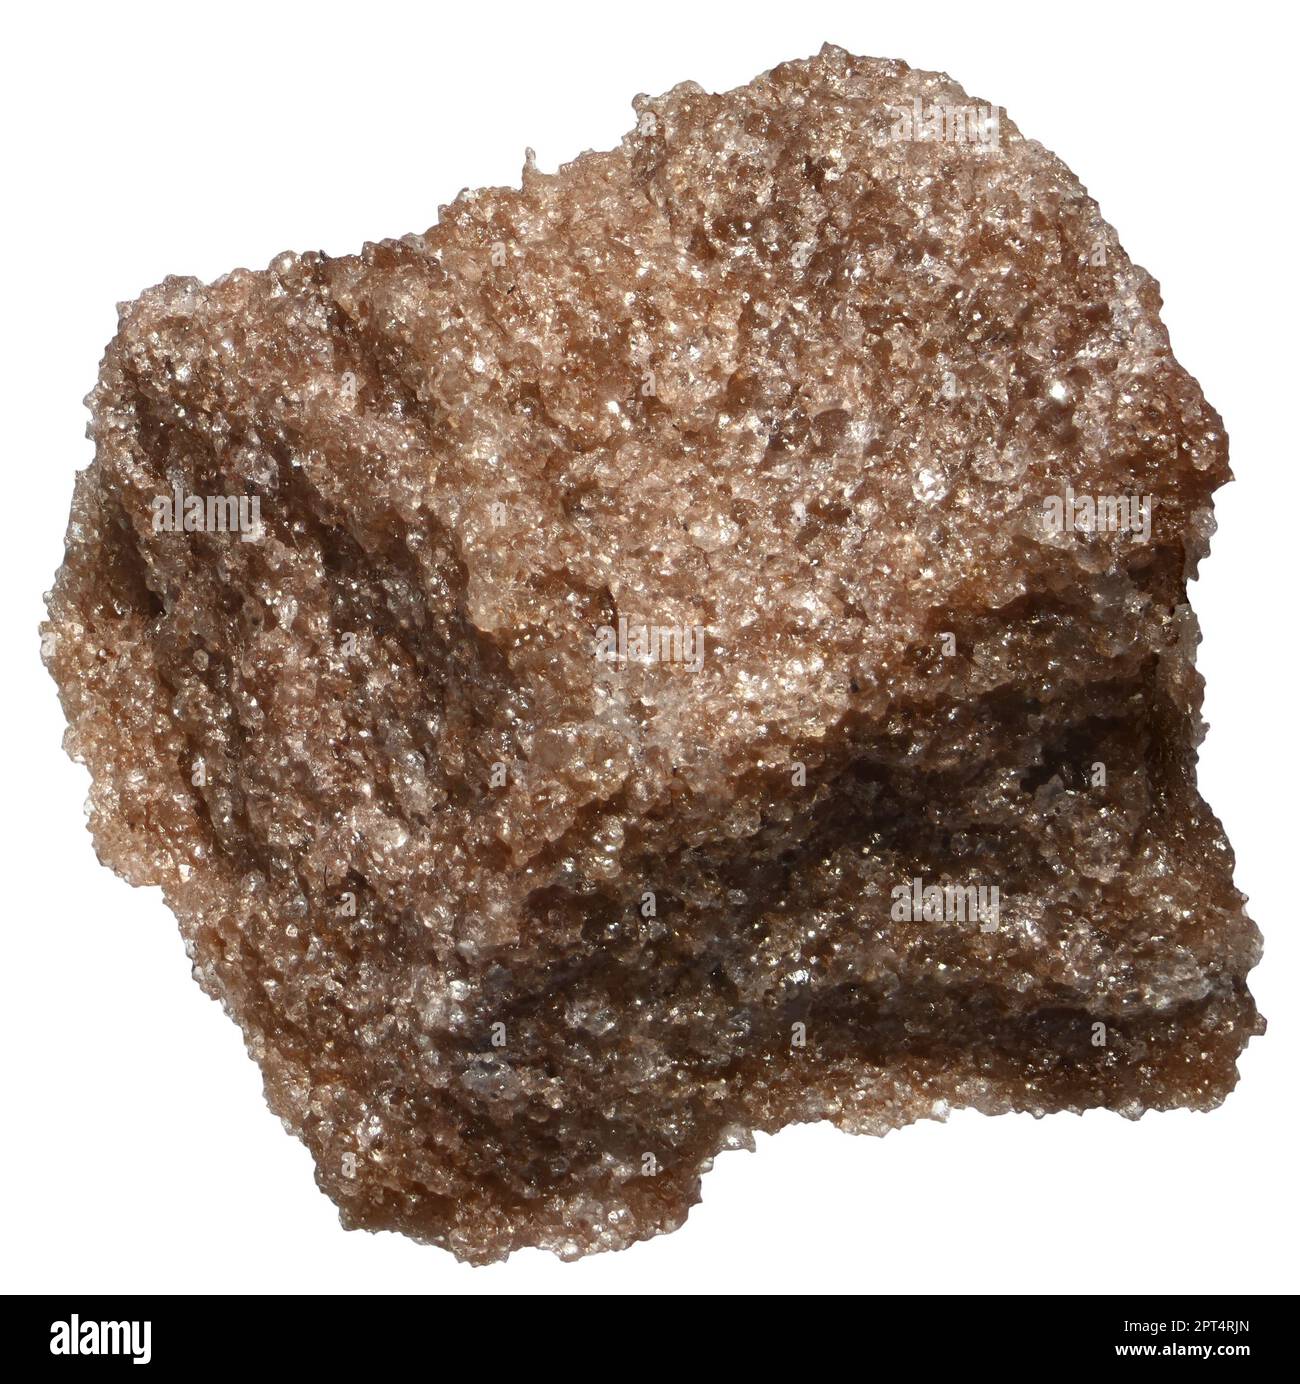 Orange Aventurine Quartz crystals (from Zlatoust, Urals, Russia) c1cm across Stock Photo